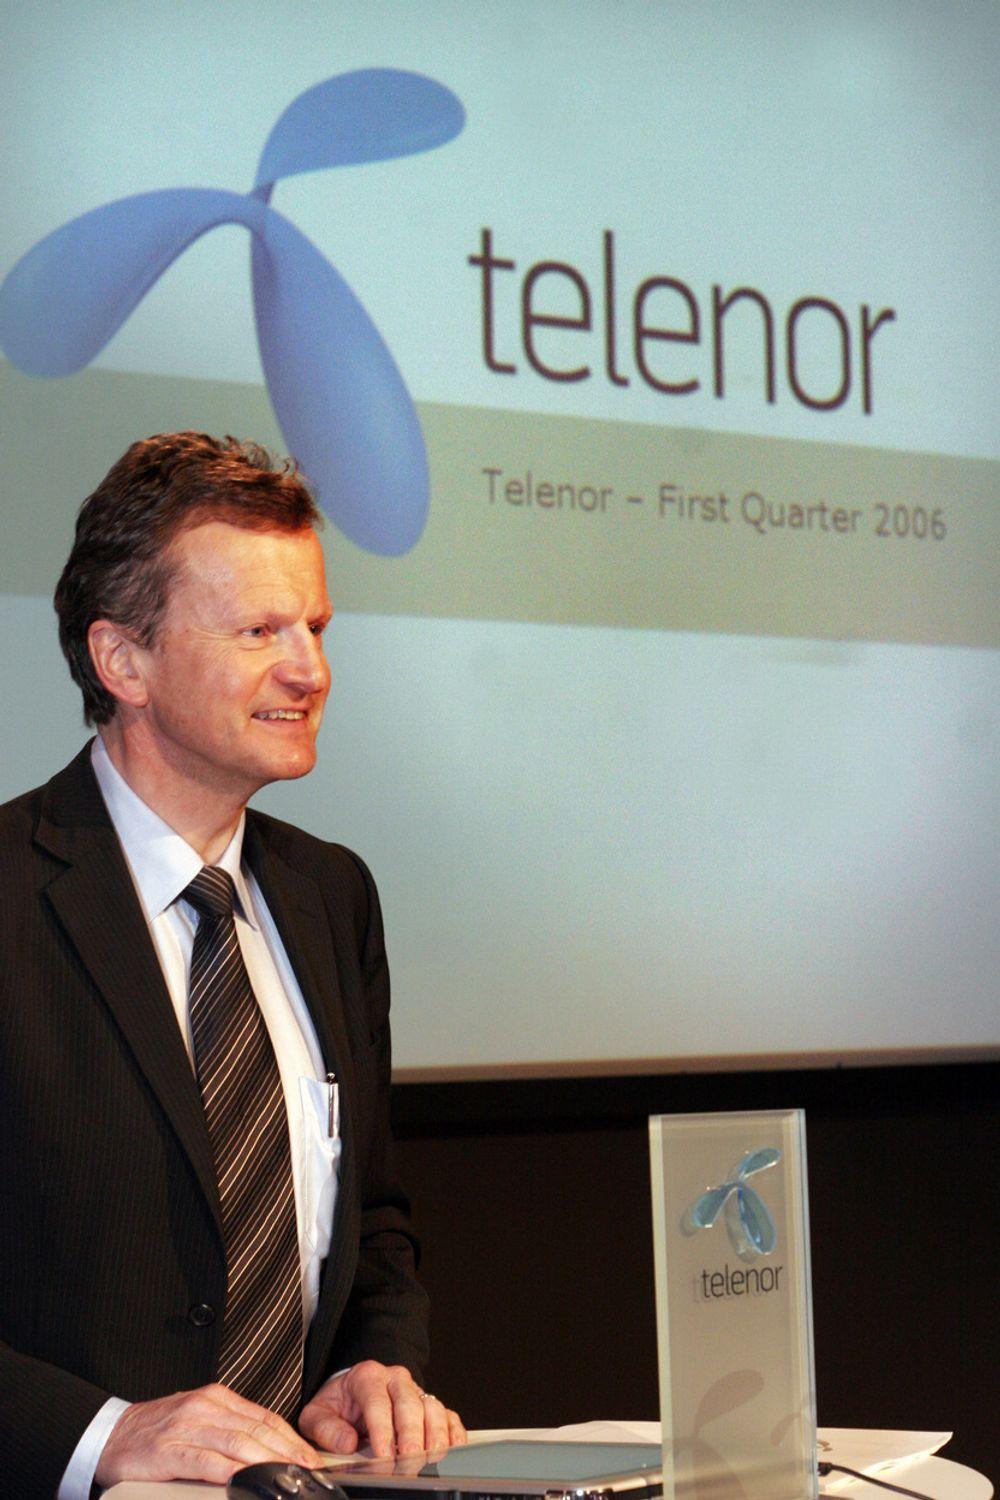 FESTKLAR: Konsernsjef Jon Fredrik Baksaas og Telenor vil i Barcelona legge frem resultattall, samt vise seg fram for den internasjonale mobilbransjen.